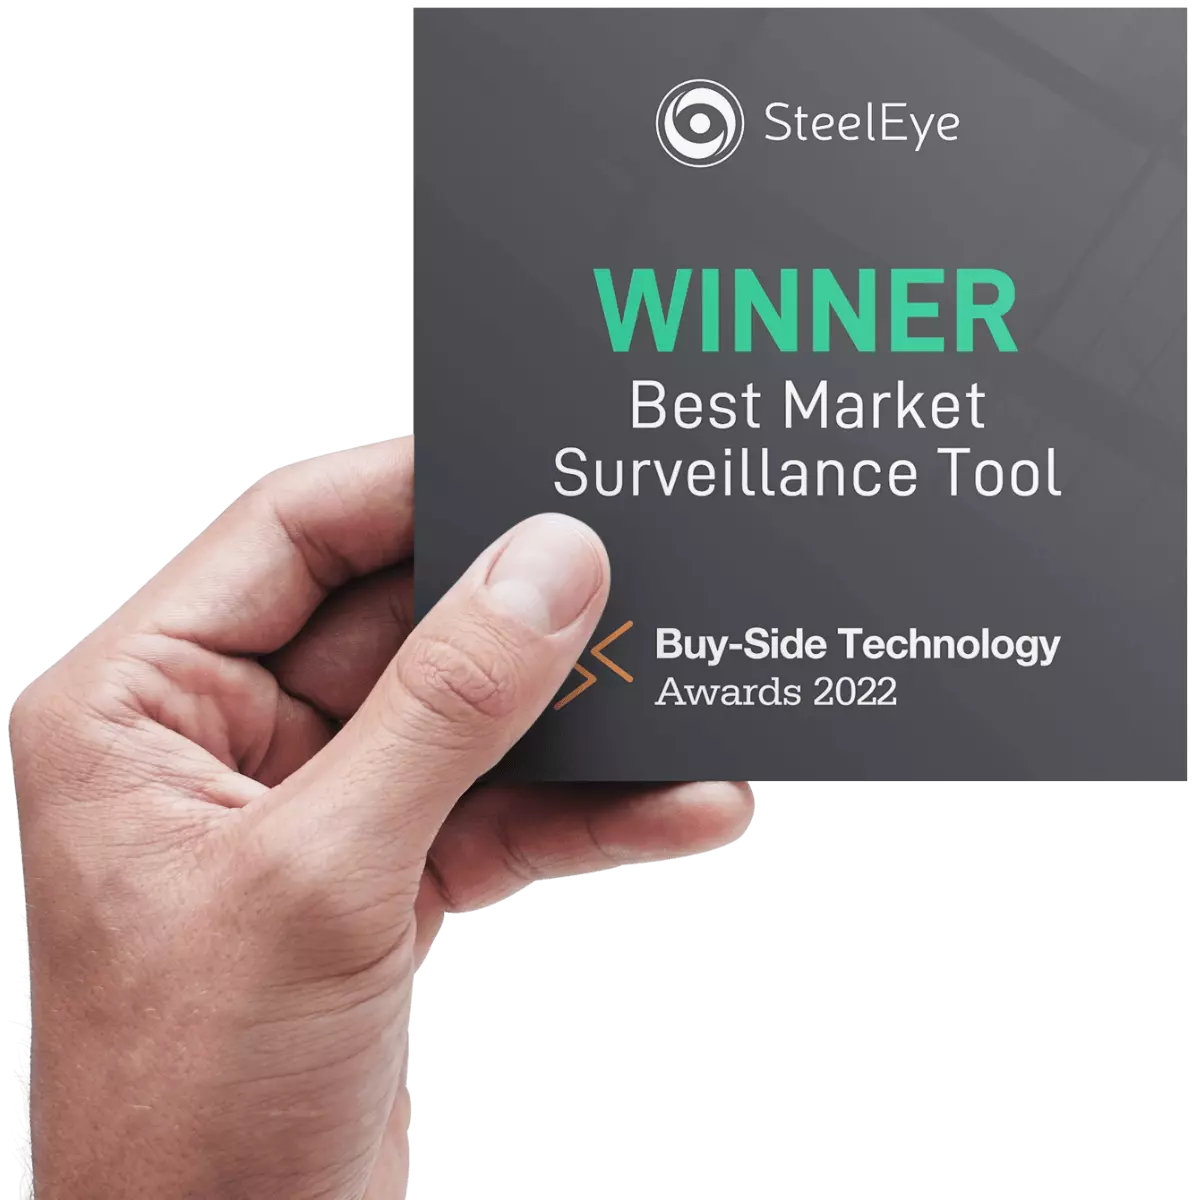 SteelEye Best Market Surveillance Tool